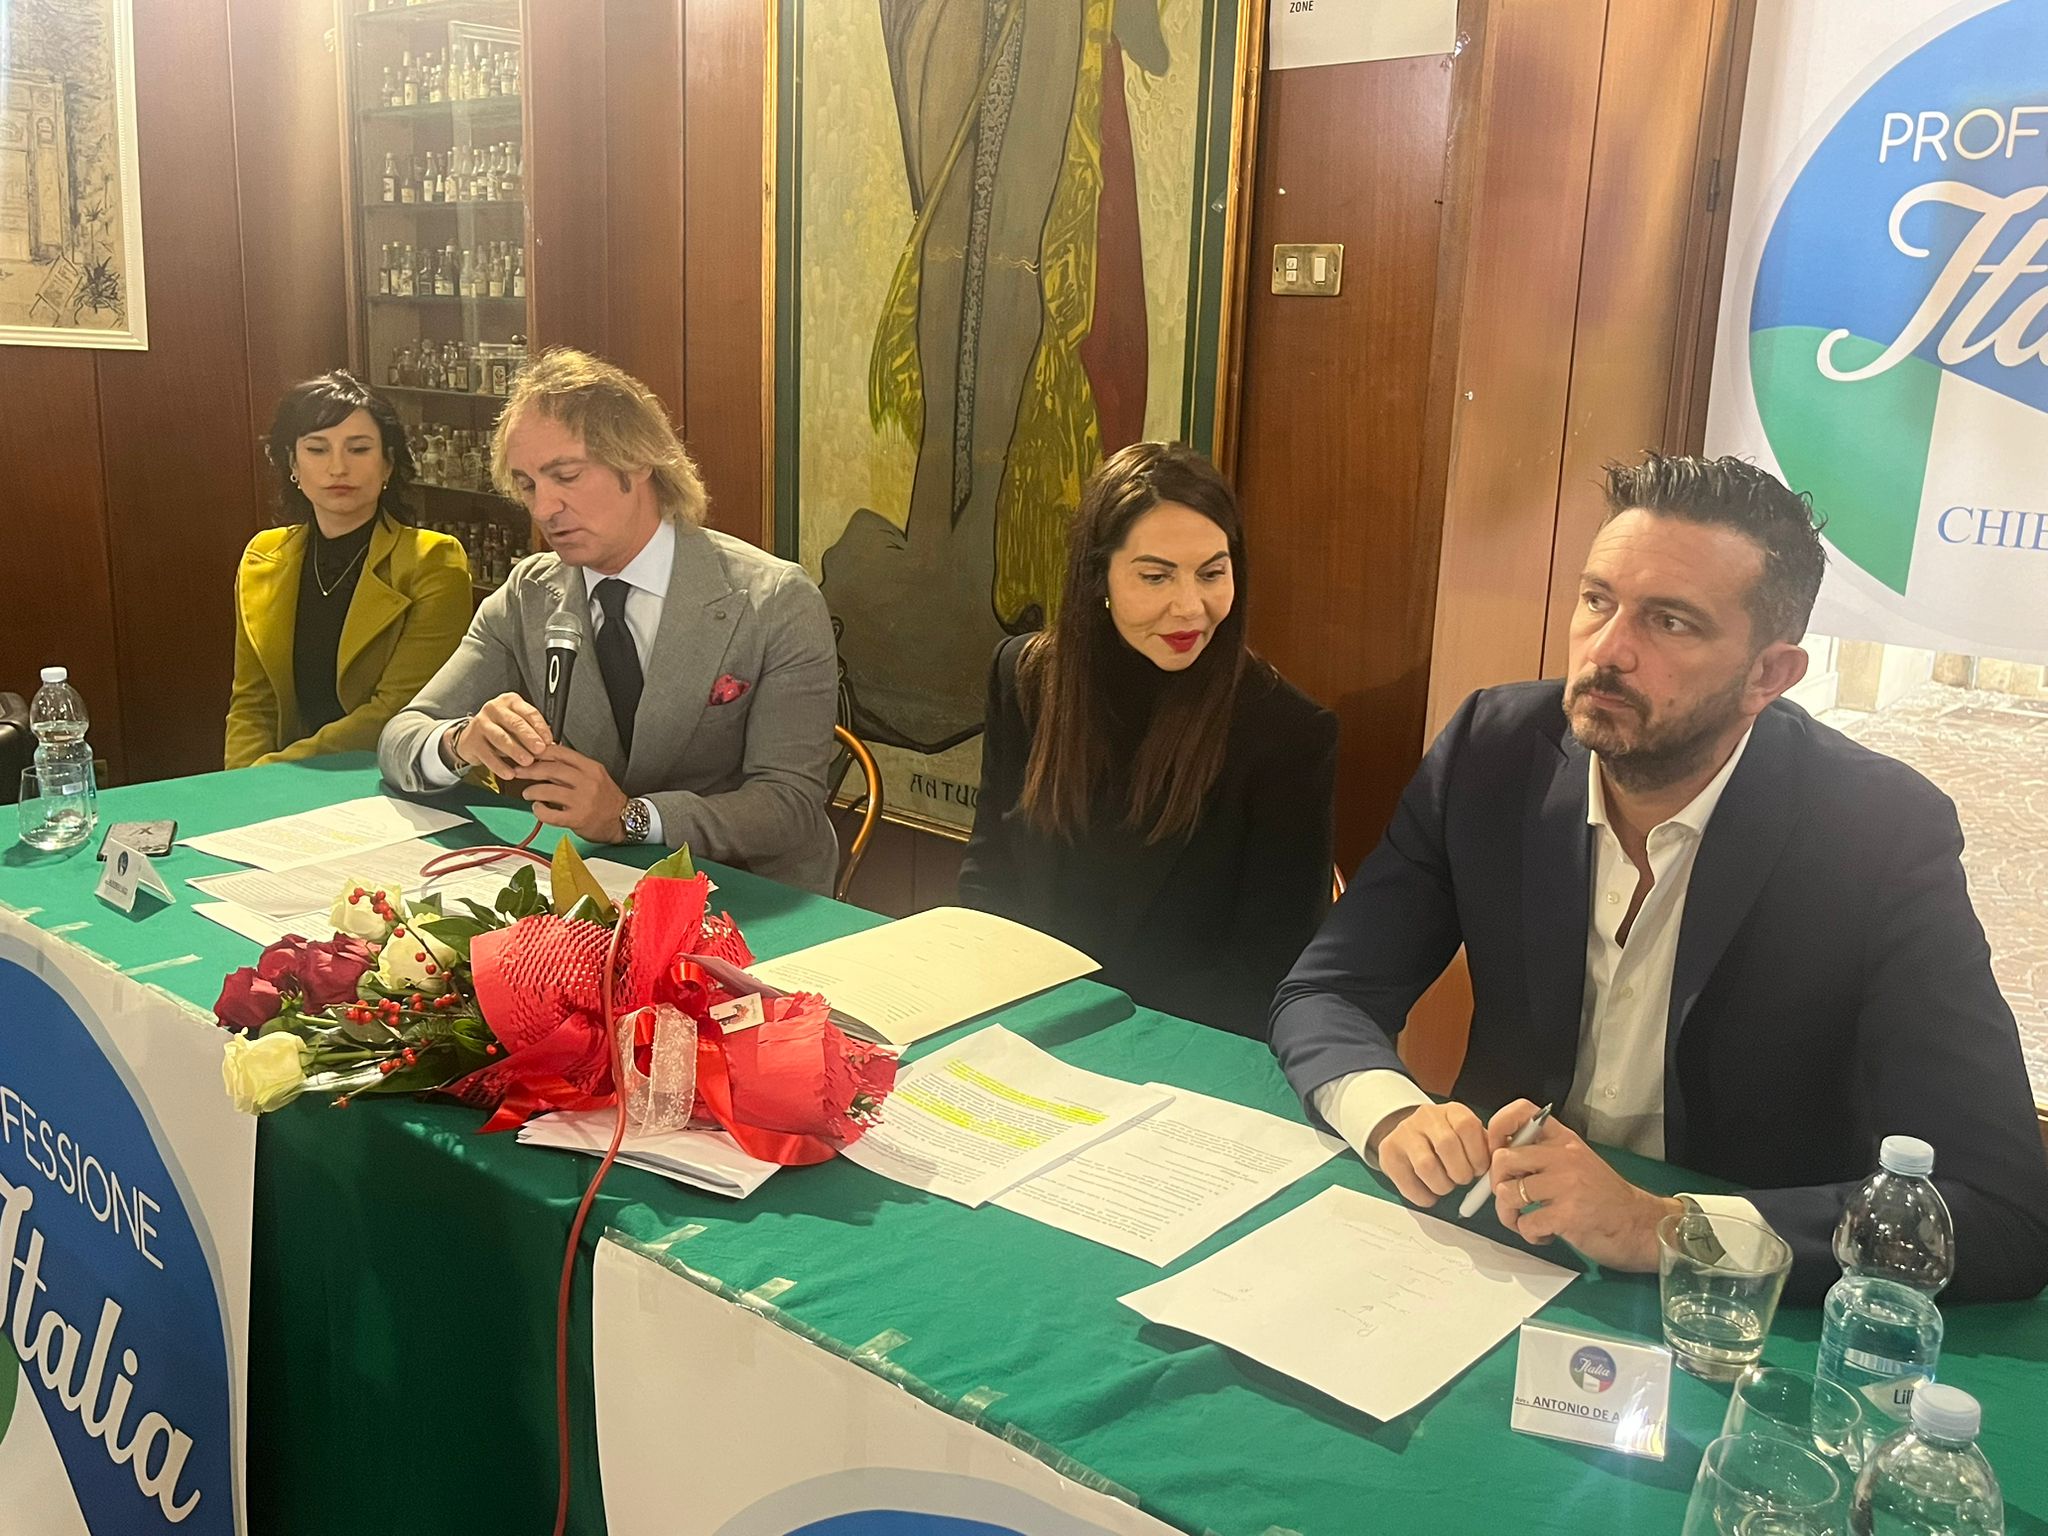 Nasce a Chieti l'Associazione "Professione Italia" - Inaugurata la Sezione Locale con una Conferenza stampa